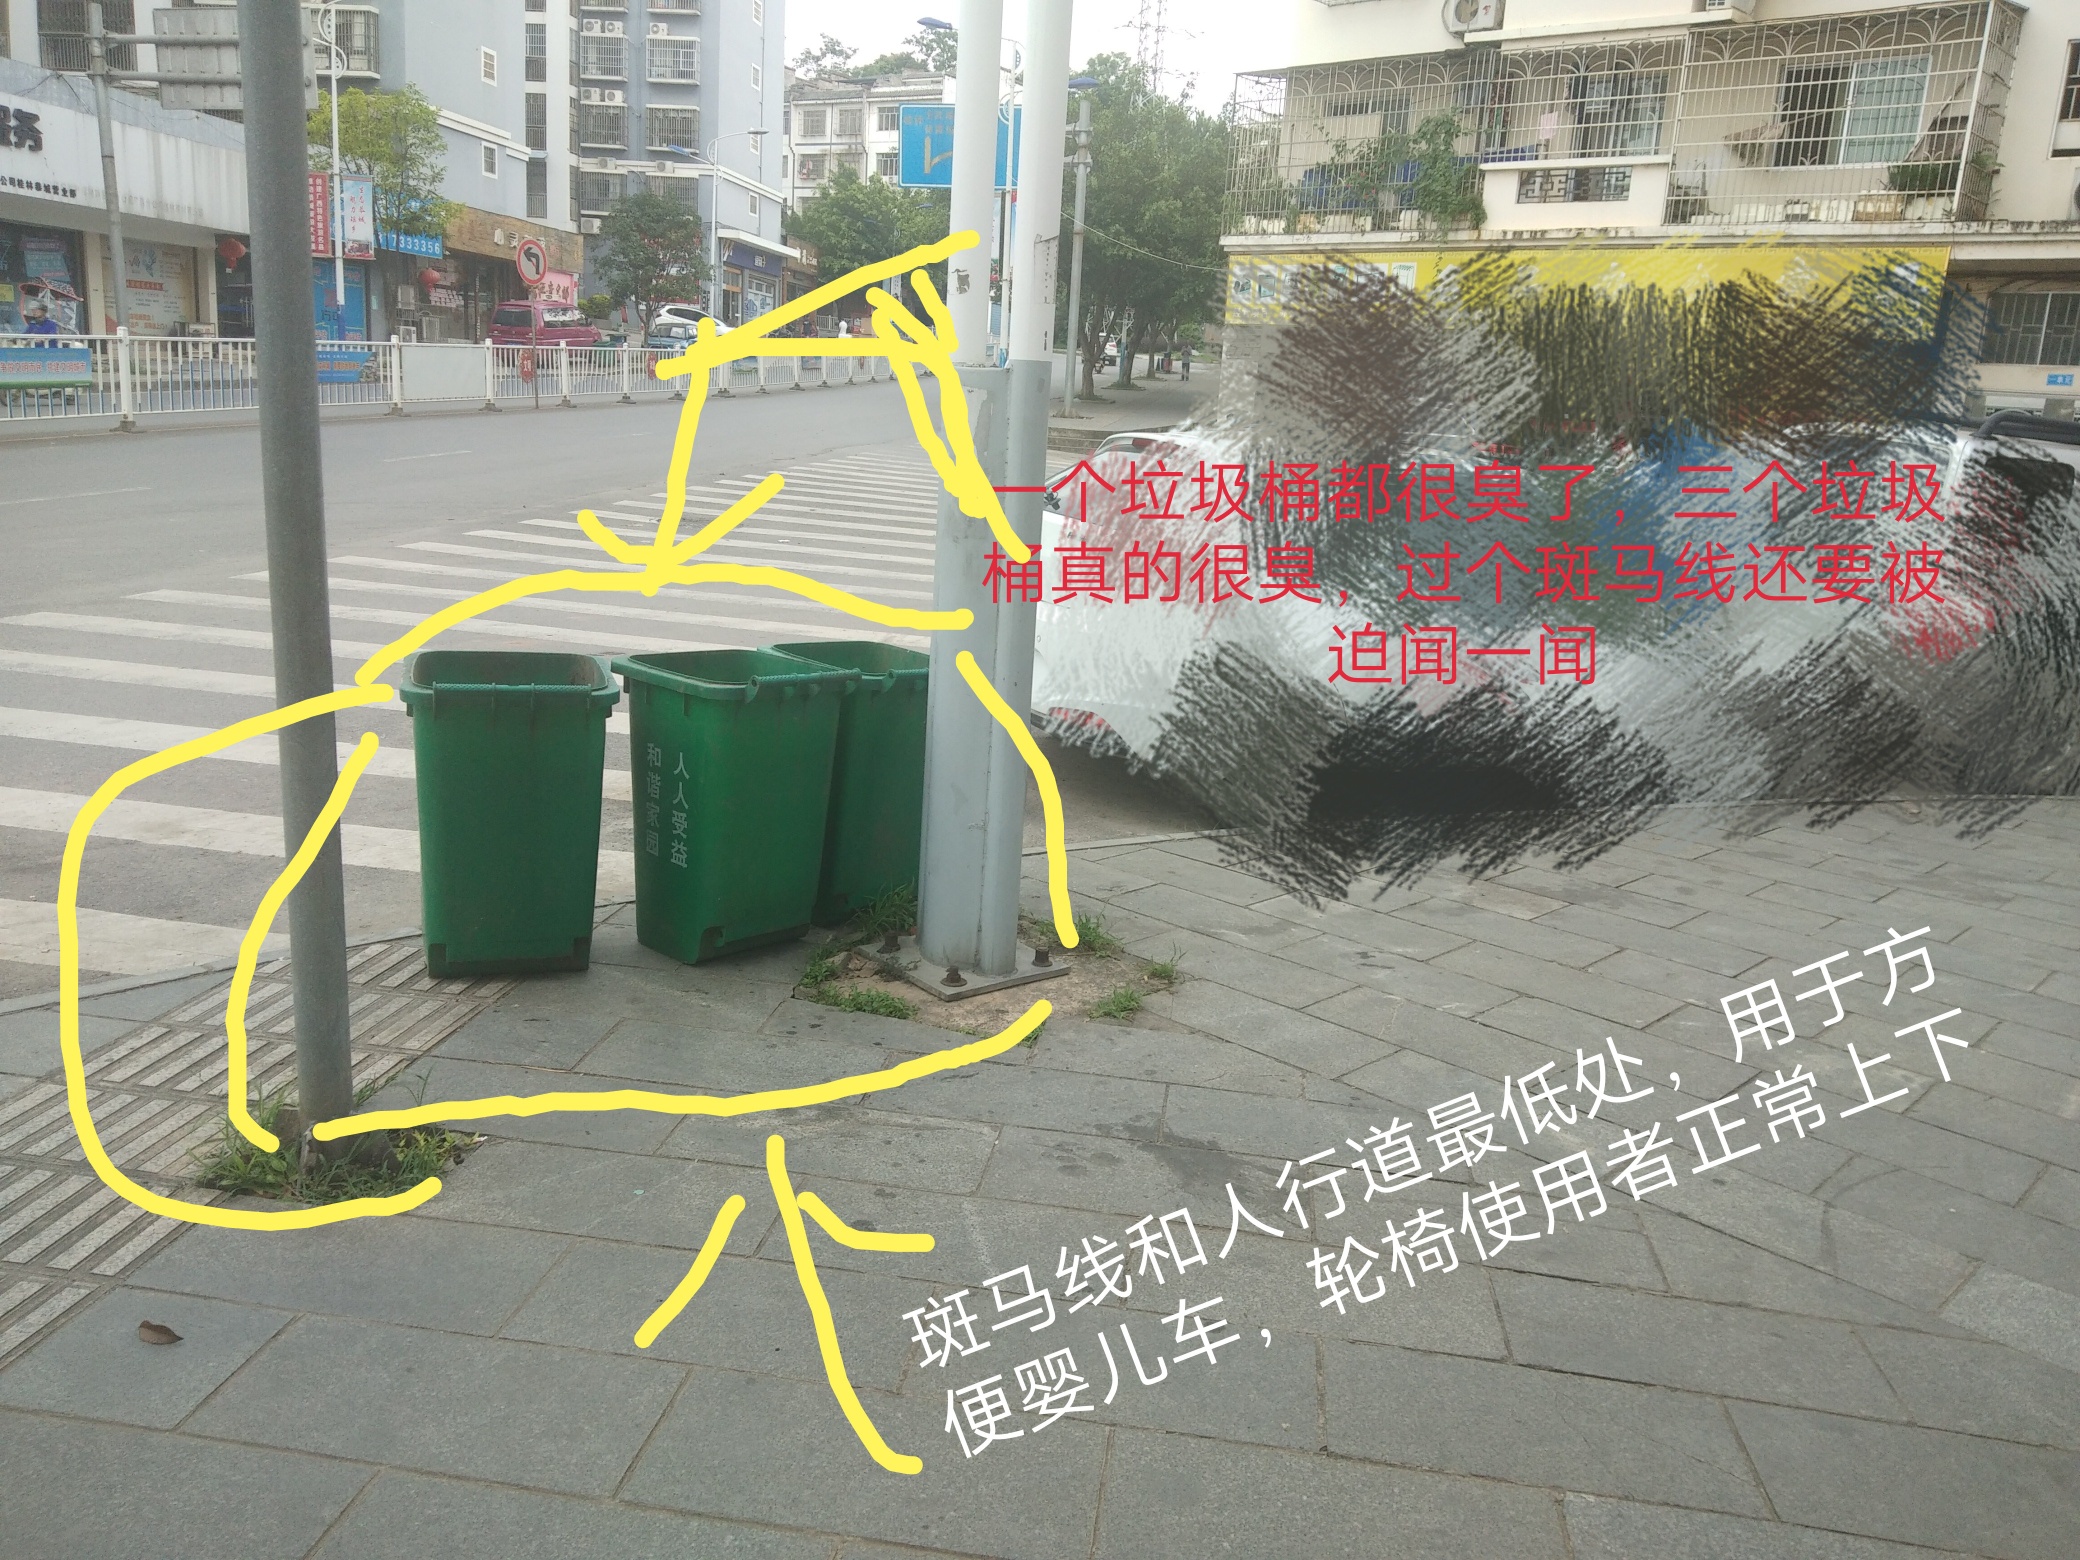 三个露口式绿色垃圾桶列队向行人宣誓“领土主权”663 / 作者:阿浩哥1 / 帖子ID:268029